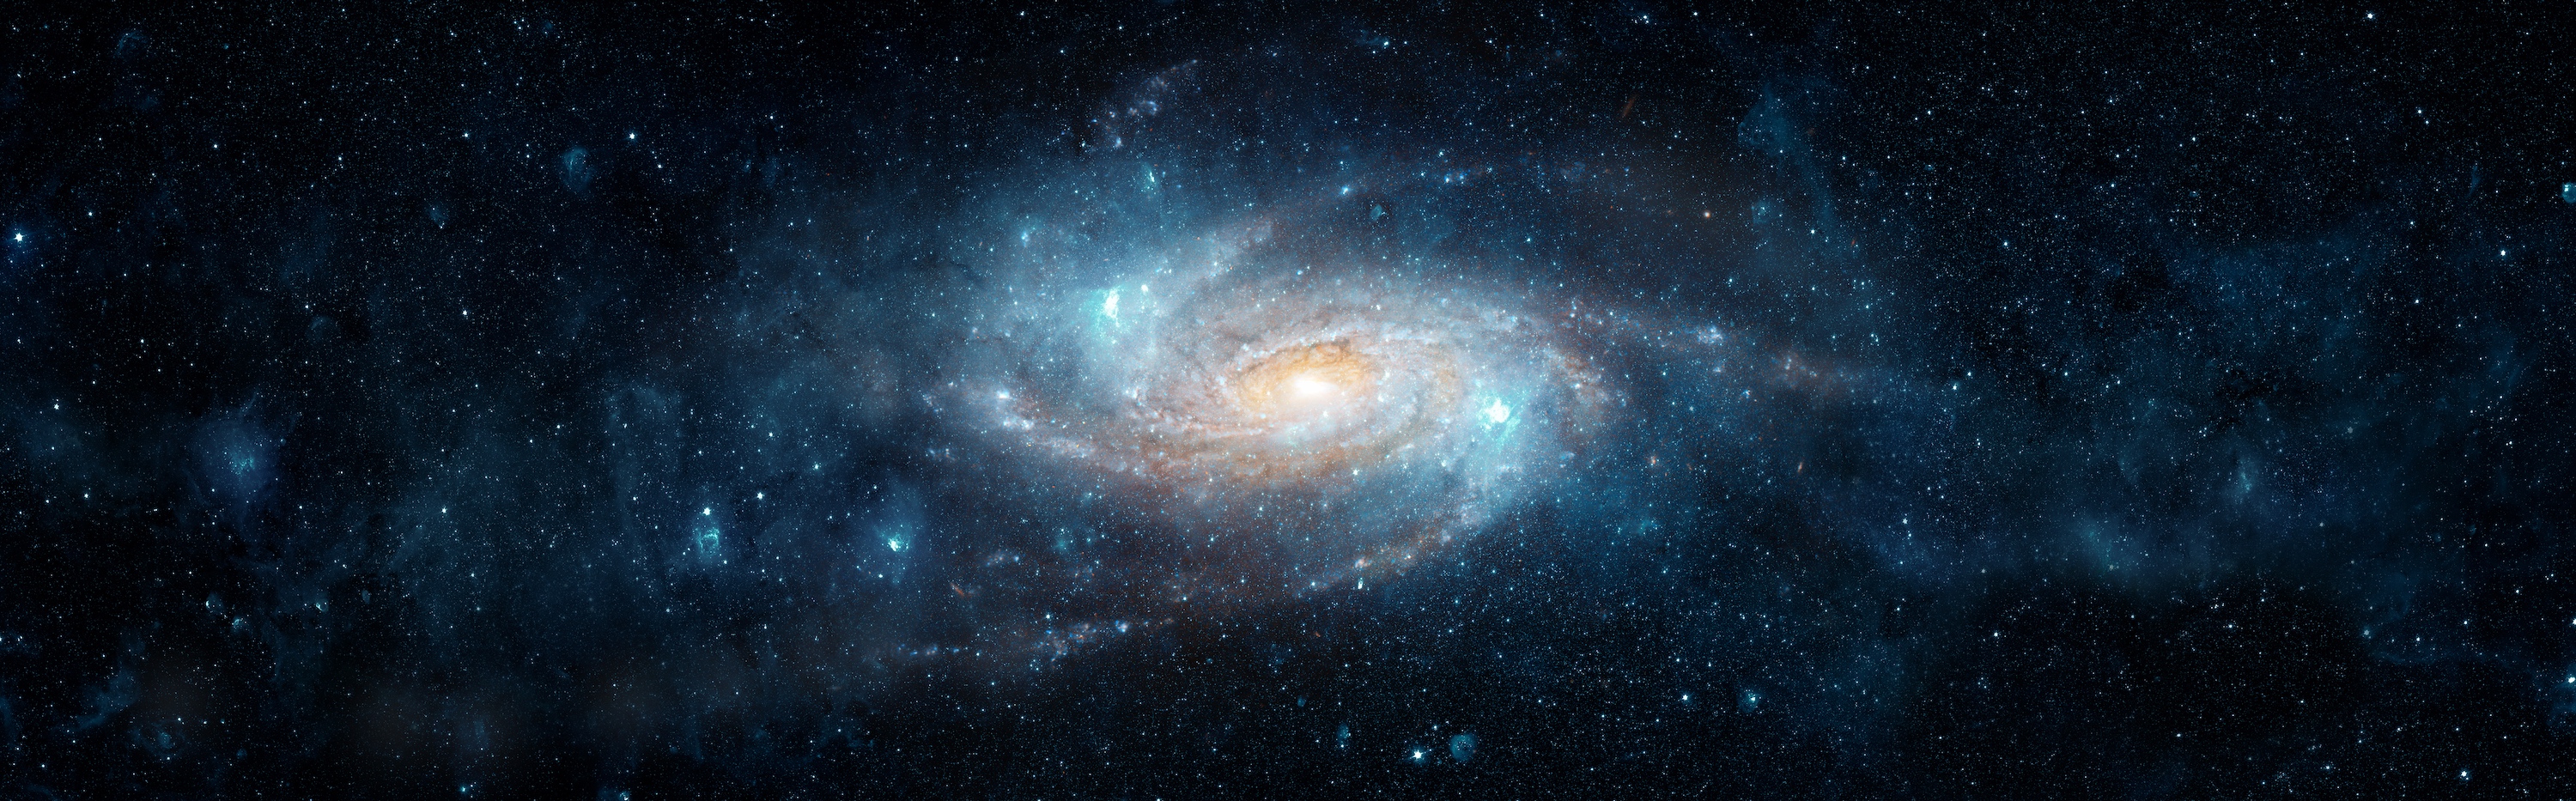 Illustration d'une galaxie spirale comparable à la nôtre, basée sur une image prise par le télescope spatial Hubble. © Tryfonov, Adobe Stock